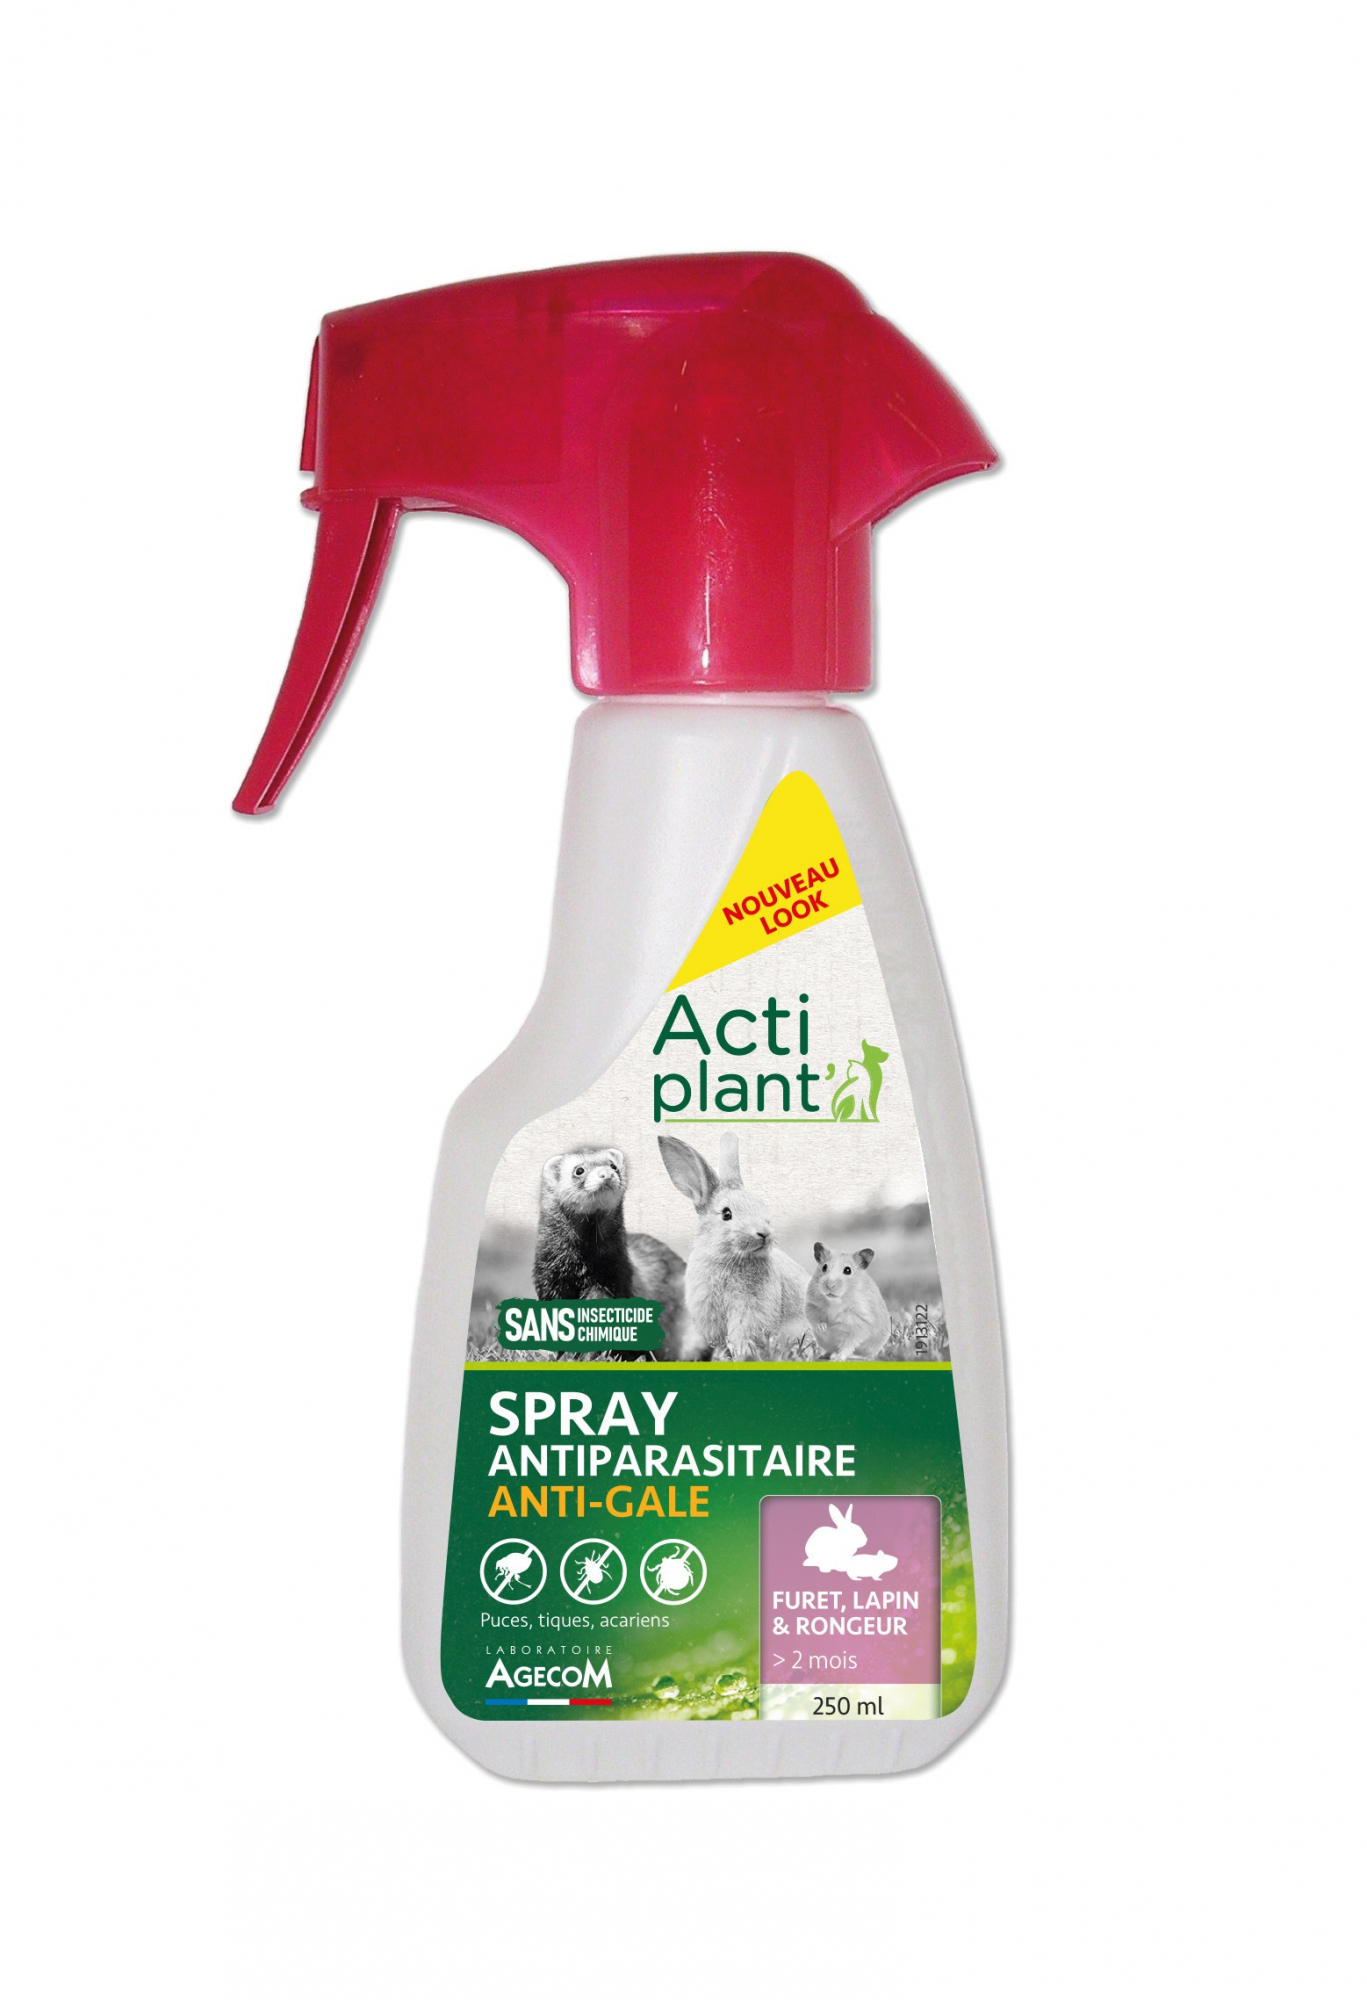 Eco Spray Nagetiere oder kleine Säugetiere 250ml